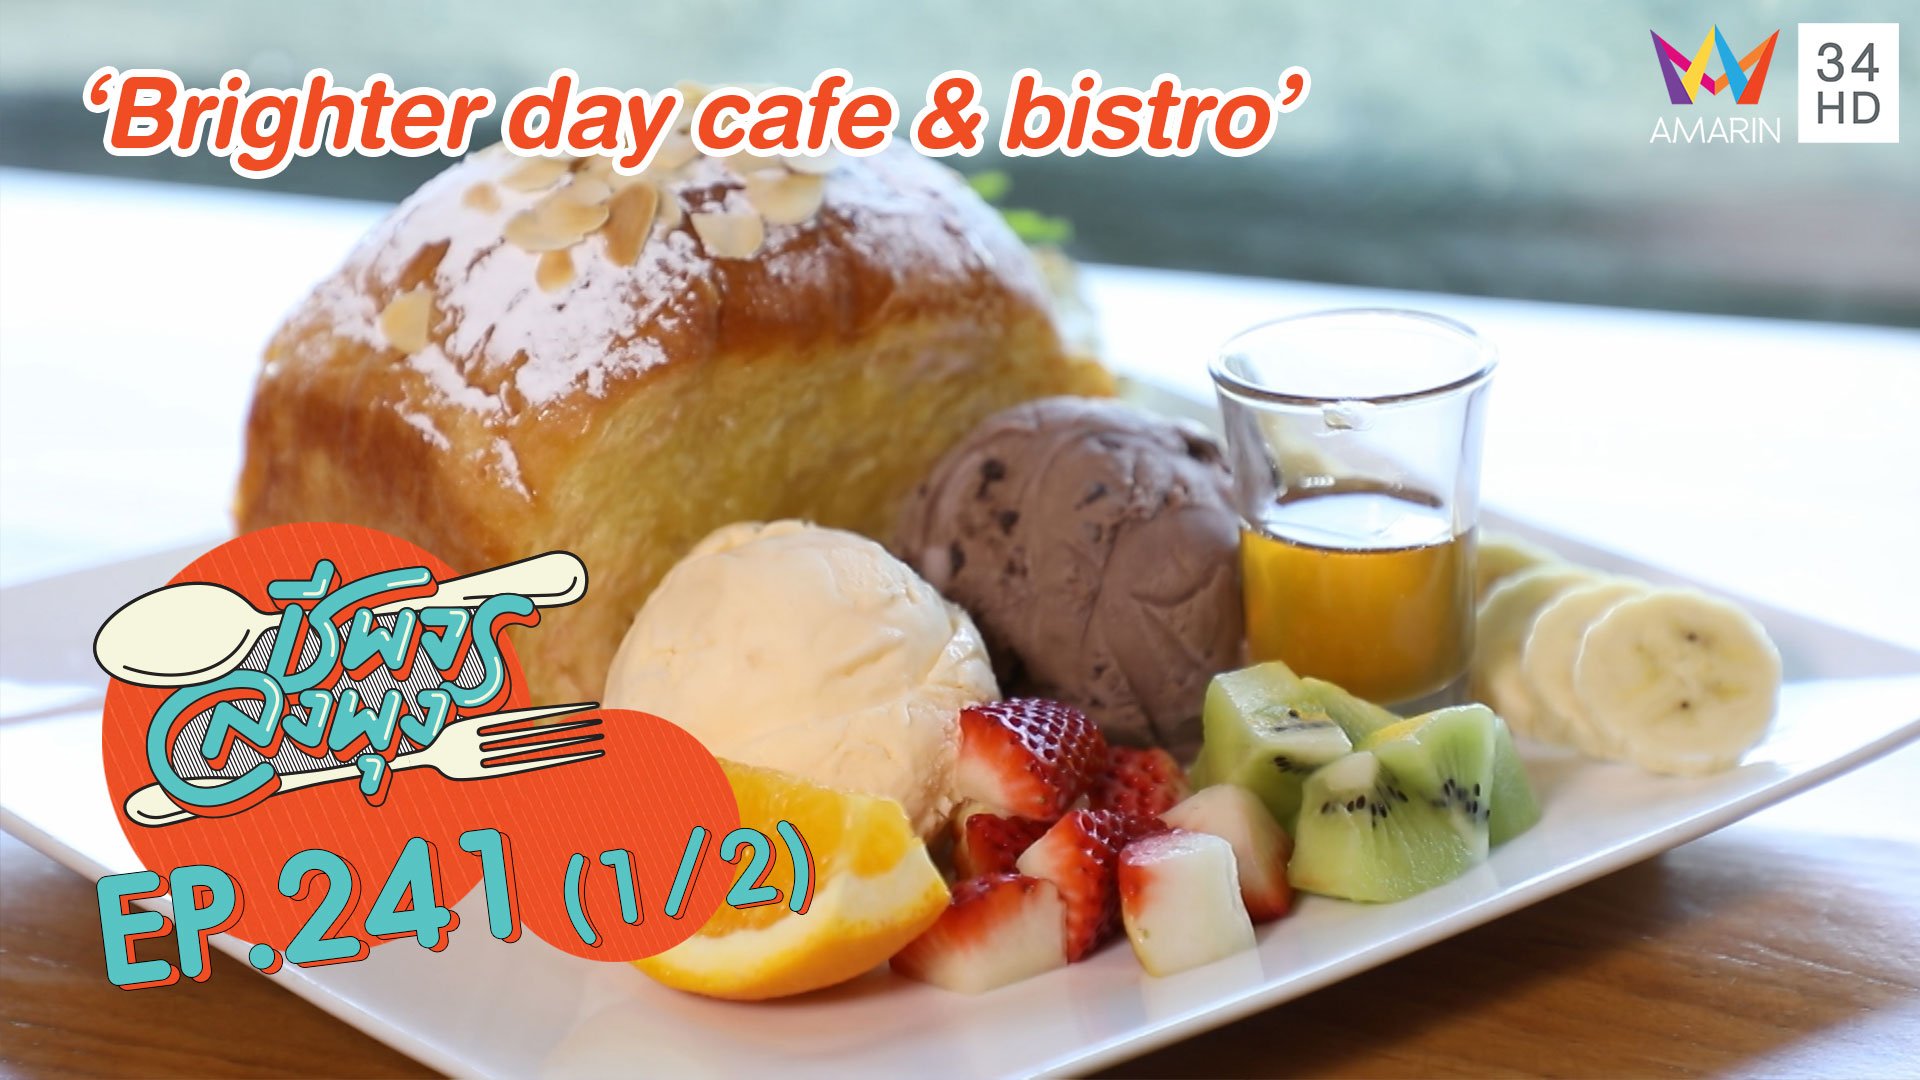 เด็ดทั้งคาวหวาน! 'ร้านBrighter day cafe & bistro'  | ชีพจรลงพุง | 27 ก.ย. 63 (1/2) | AMARIN TVHD34